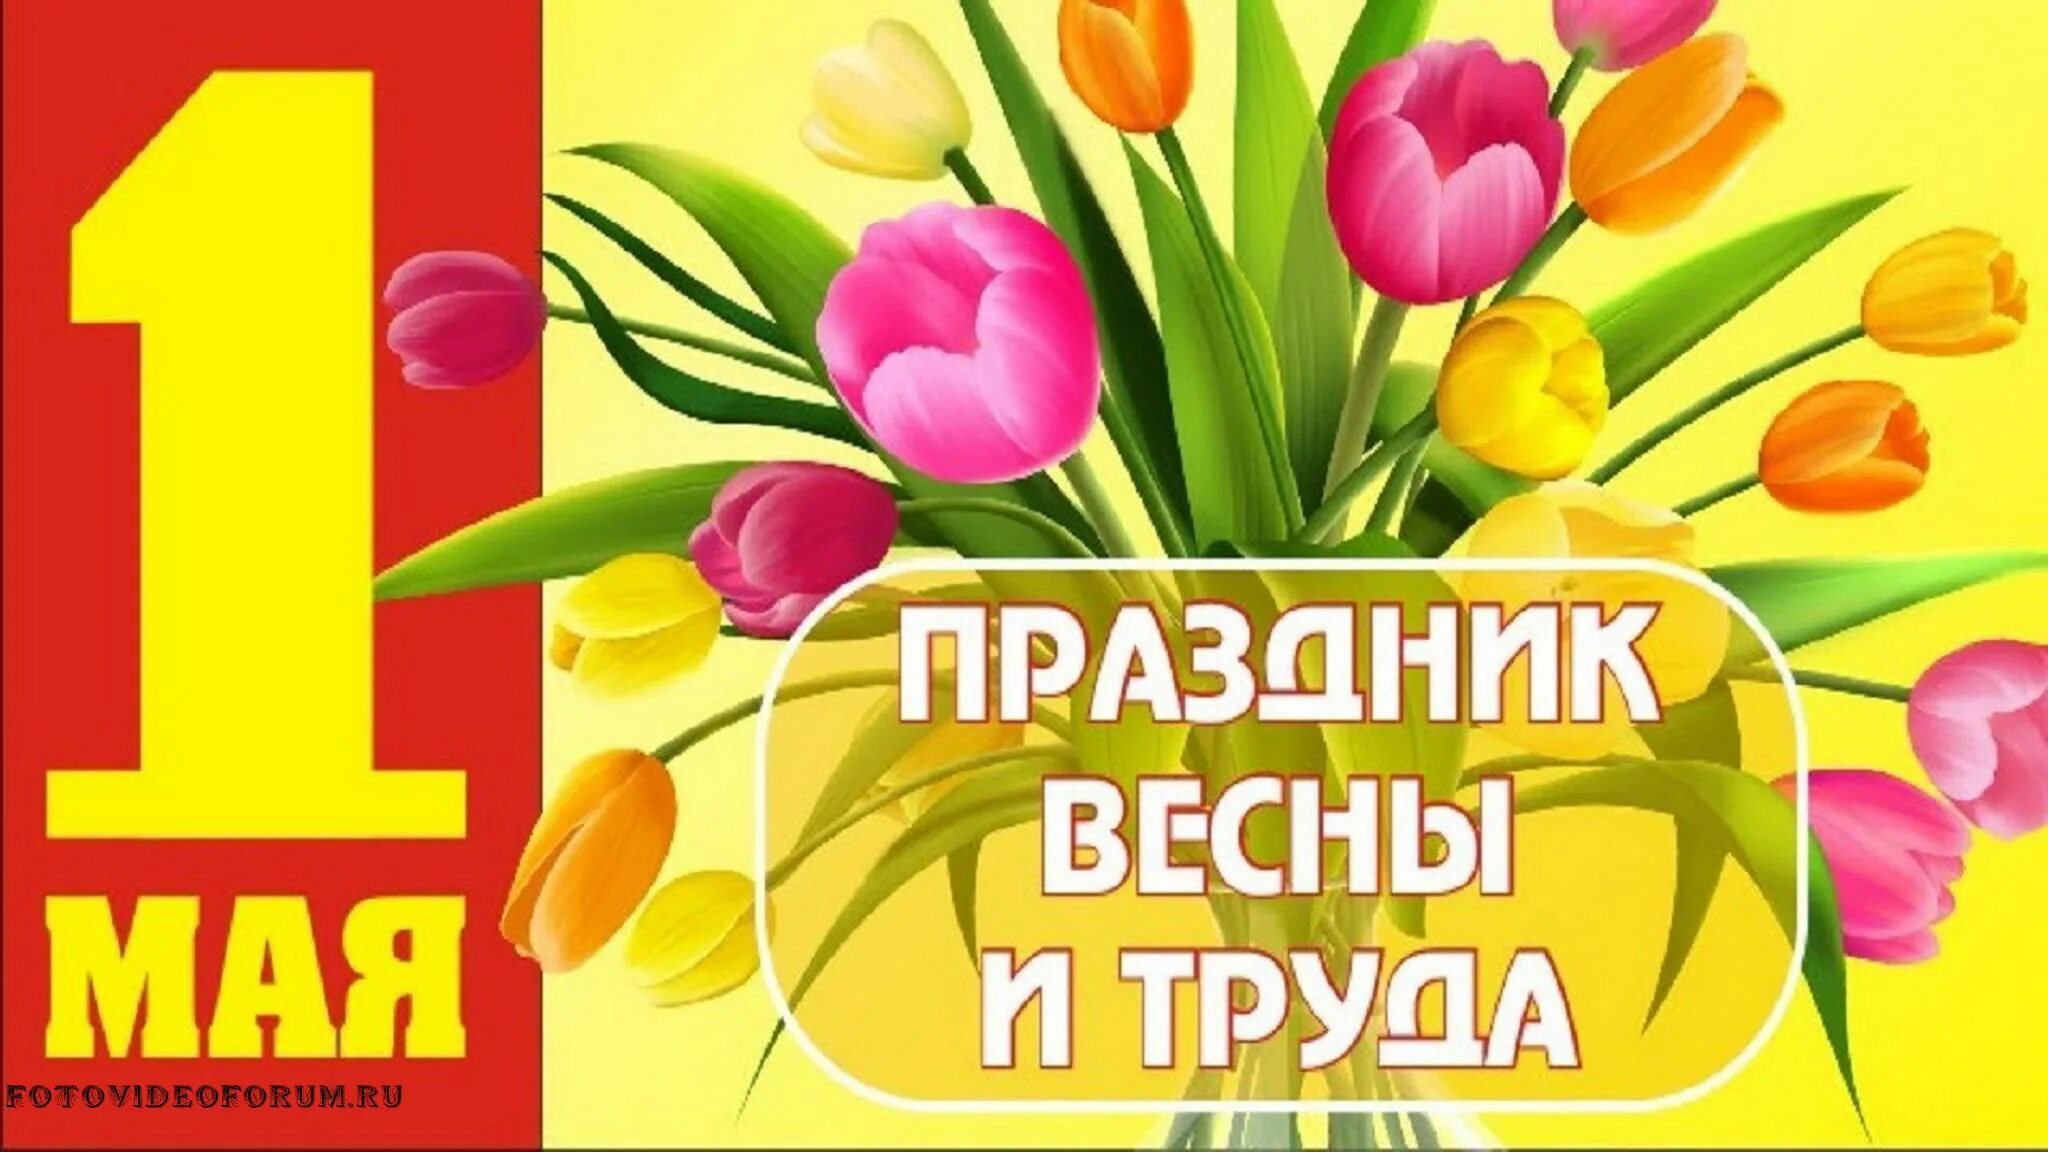 Поздравление с 1 мая. Открытки с 1 мая. 1 Мая праздник весны и труда. Поздравления с первым мая.